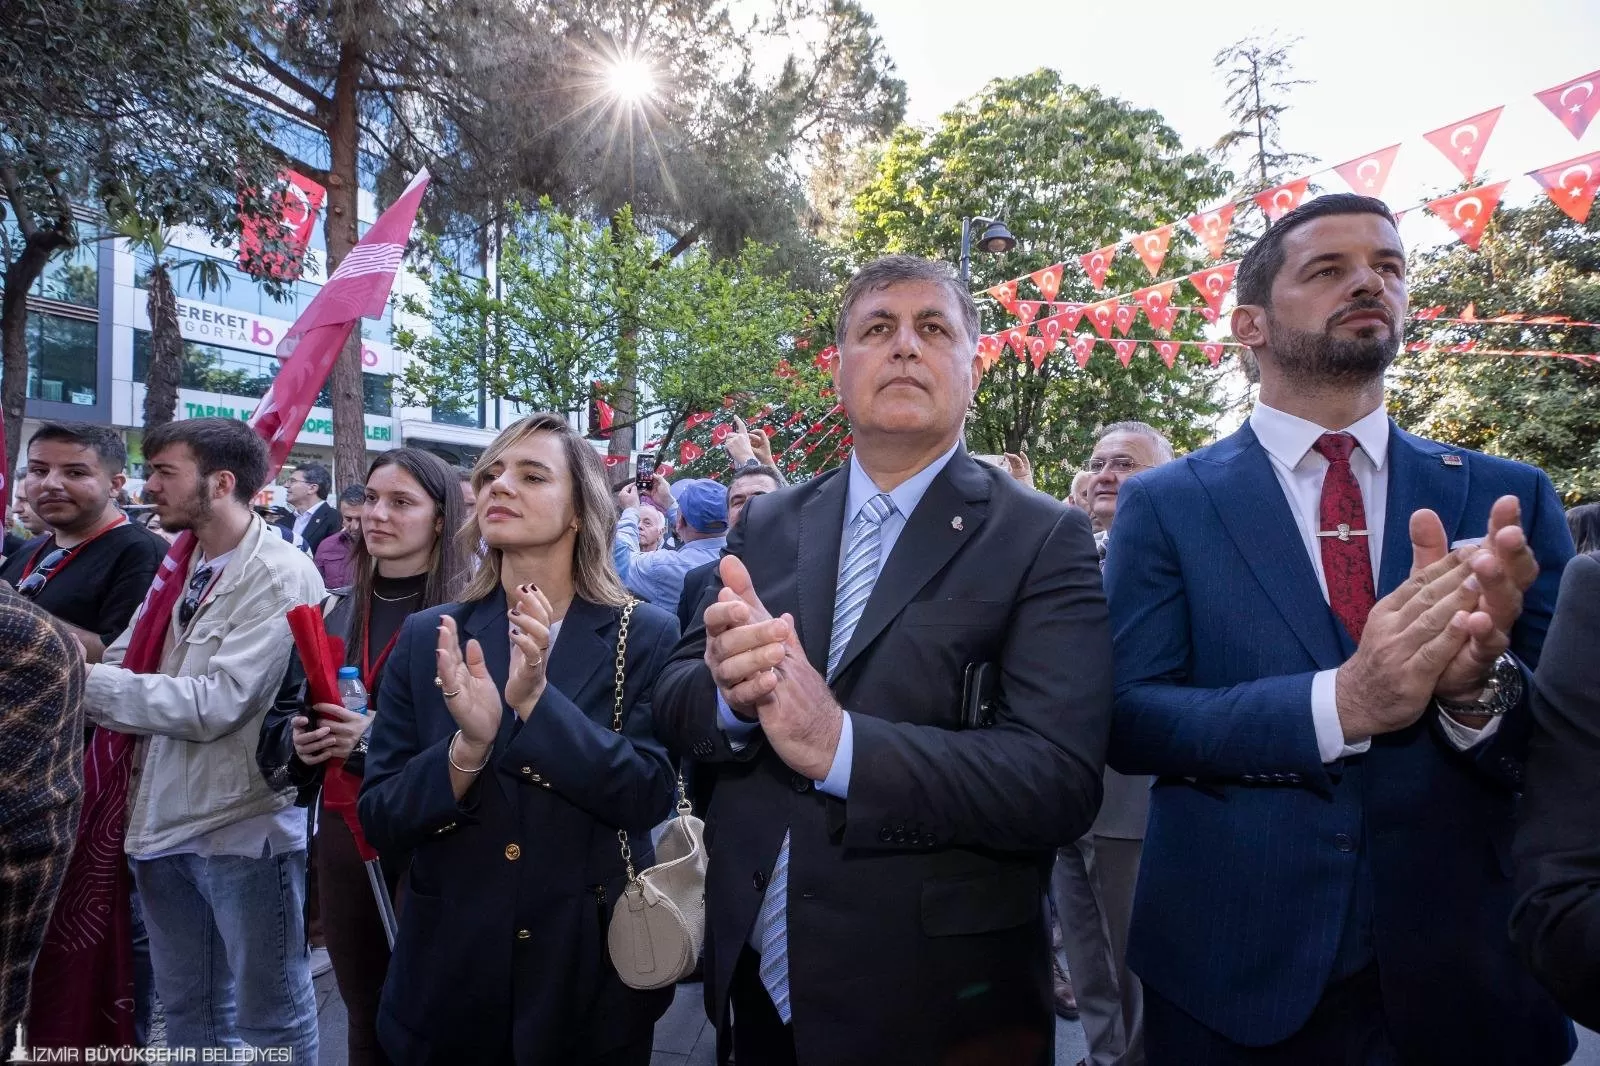 İzmir Büyükşehir Belediye Başkanı Dr. Cemil Tugay, 19 Mayıs Atatürk'ü Anma, Gençlik ve Spor Bayramı'nı Samsun'da Cumhuriyet Halk Partisi (CHP) tarafından düzenlenen programla kutladı.